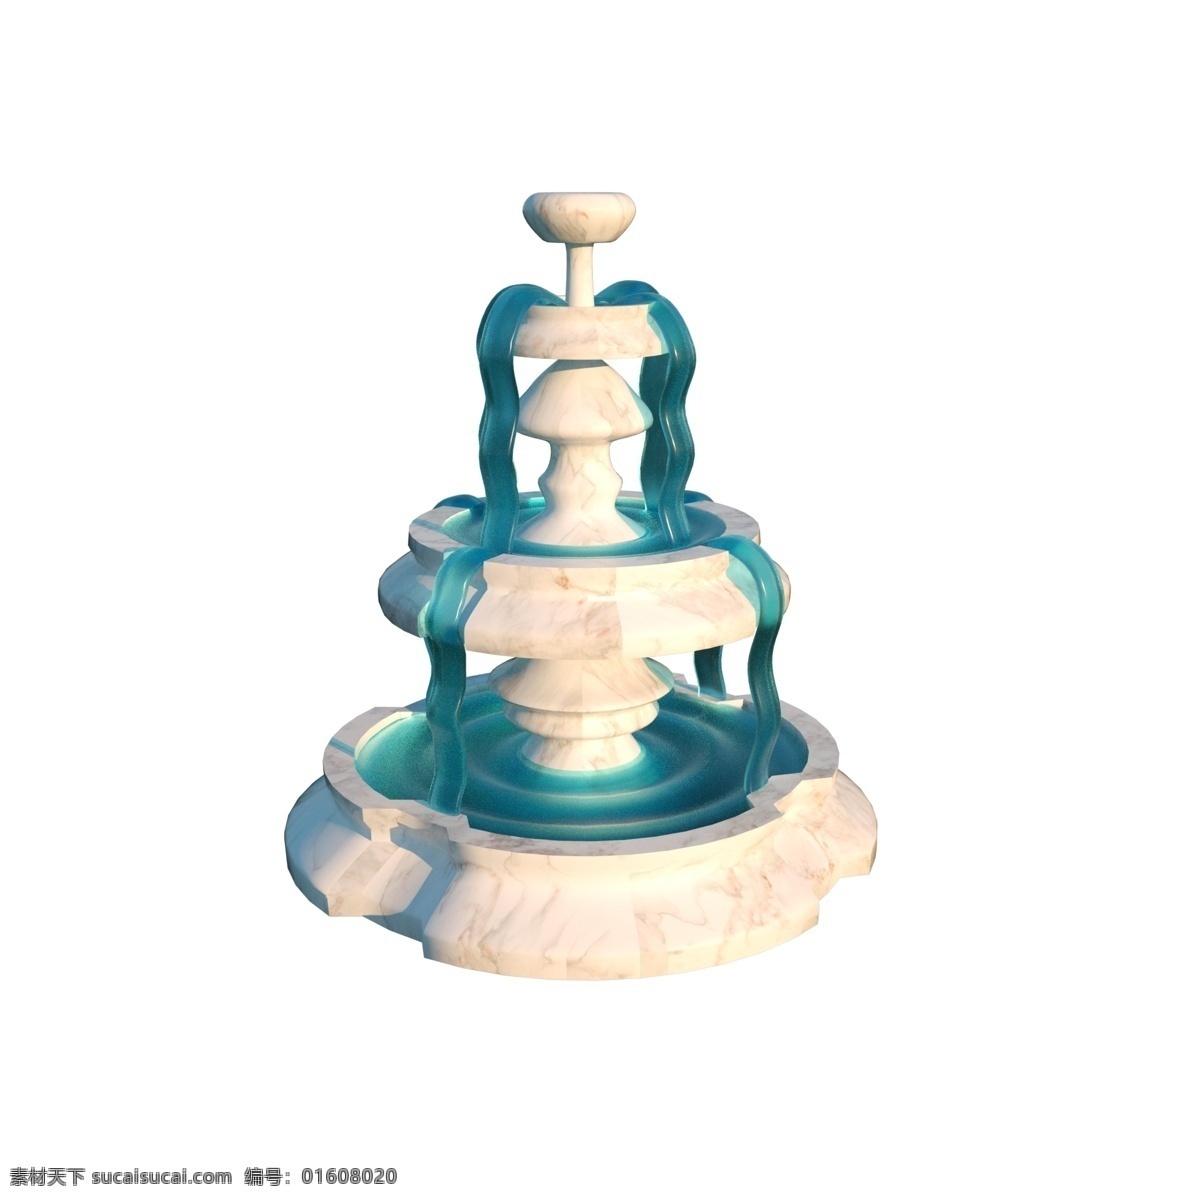 c4d 大理石 材质 喷泉 3d 模型 c4d喷泉 喷泉模型 3d喷泉模型 效果元素